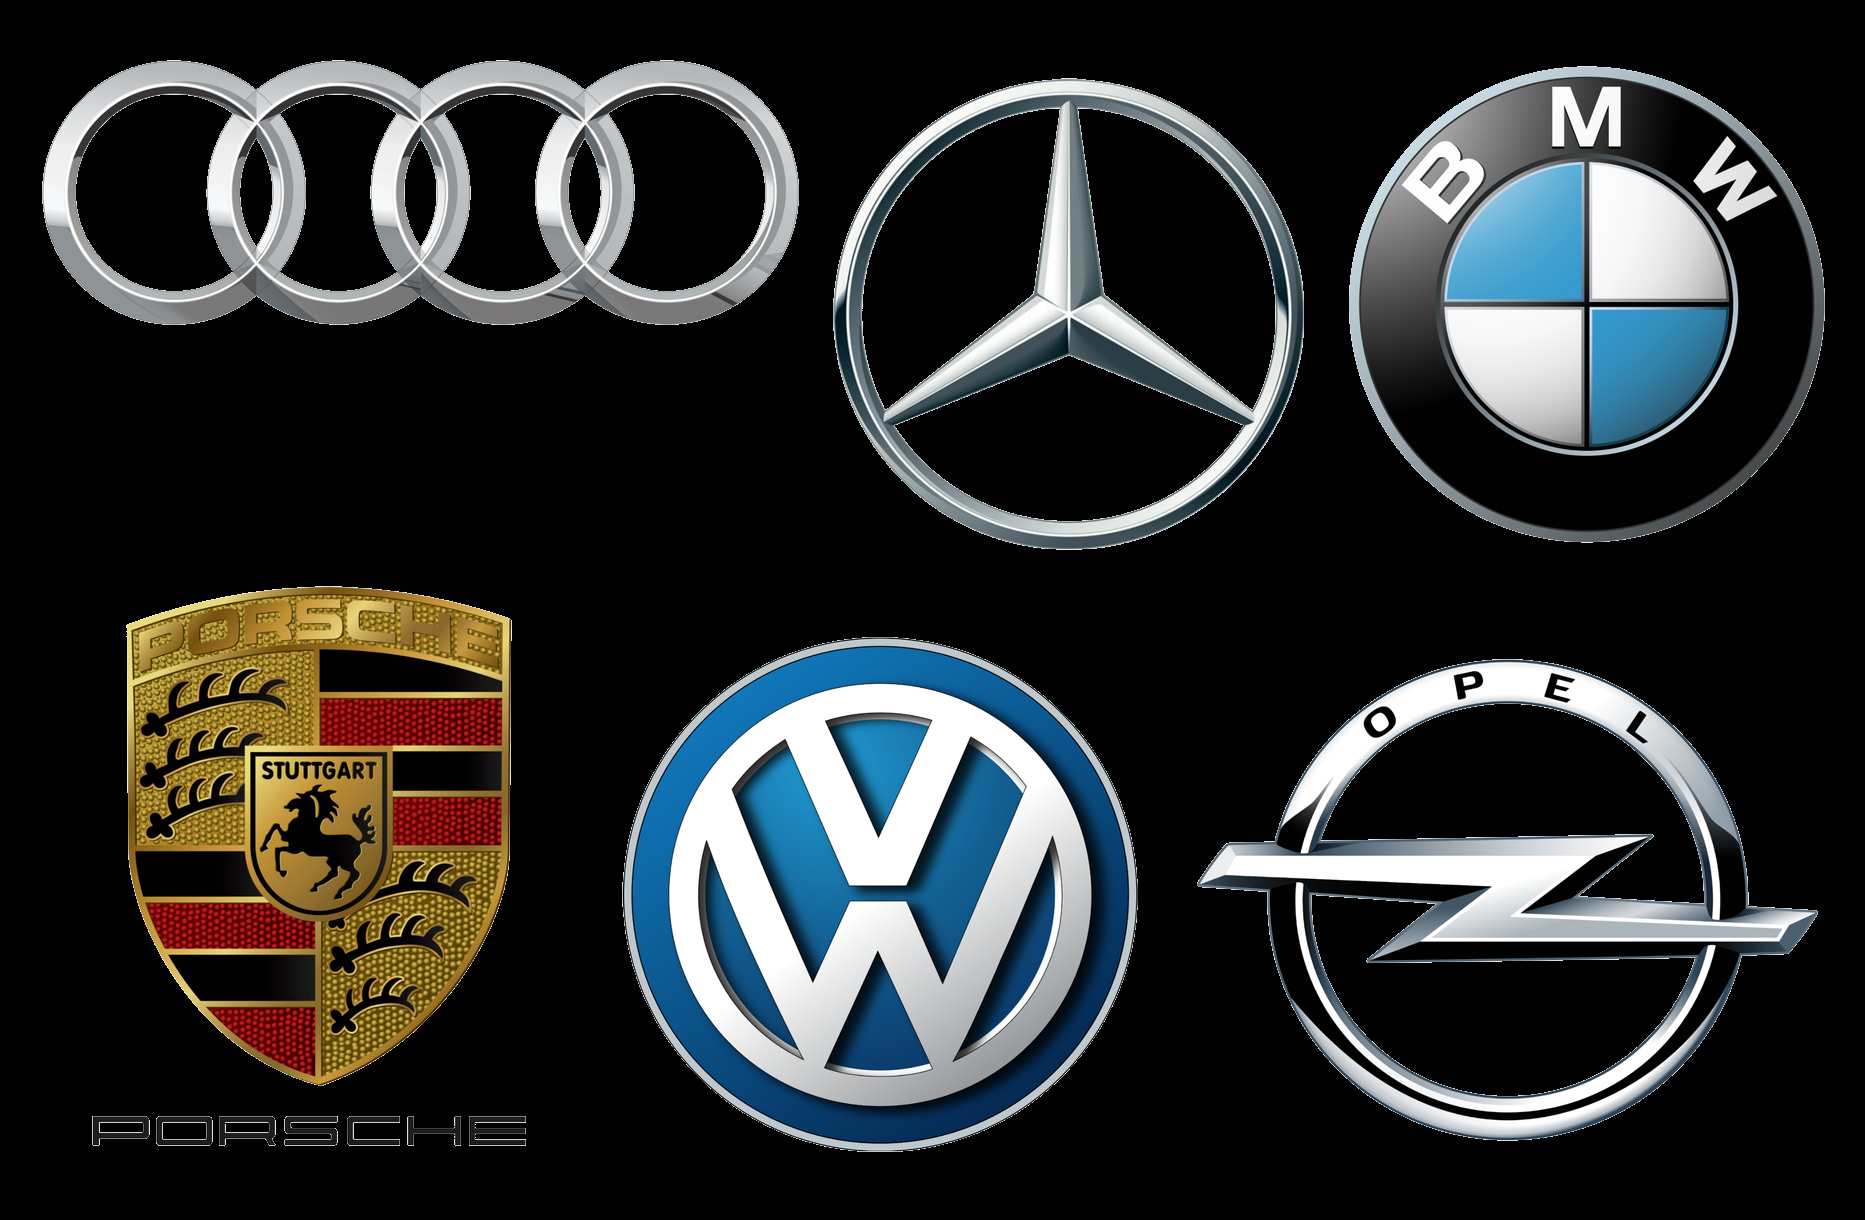 Эмблемы и логотипы: что означают и как расшифровываются названия известных автомобильных марок? часть 2 - авто гуру